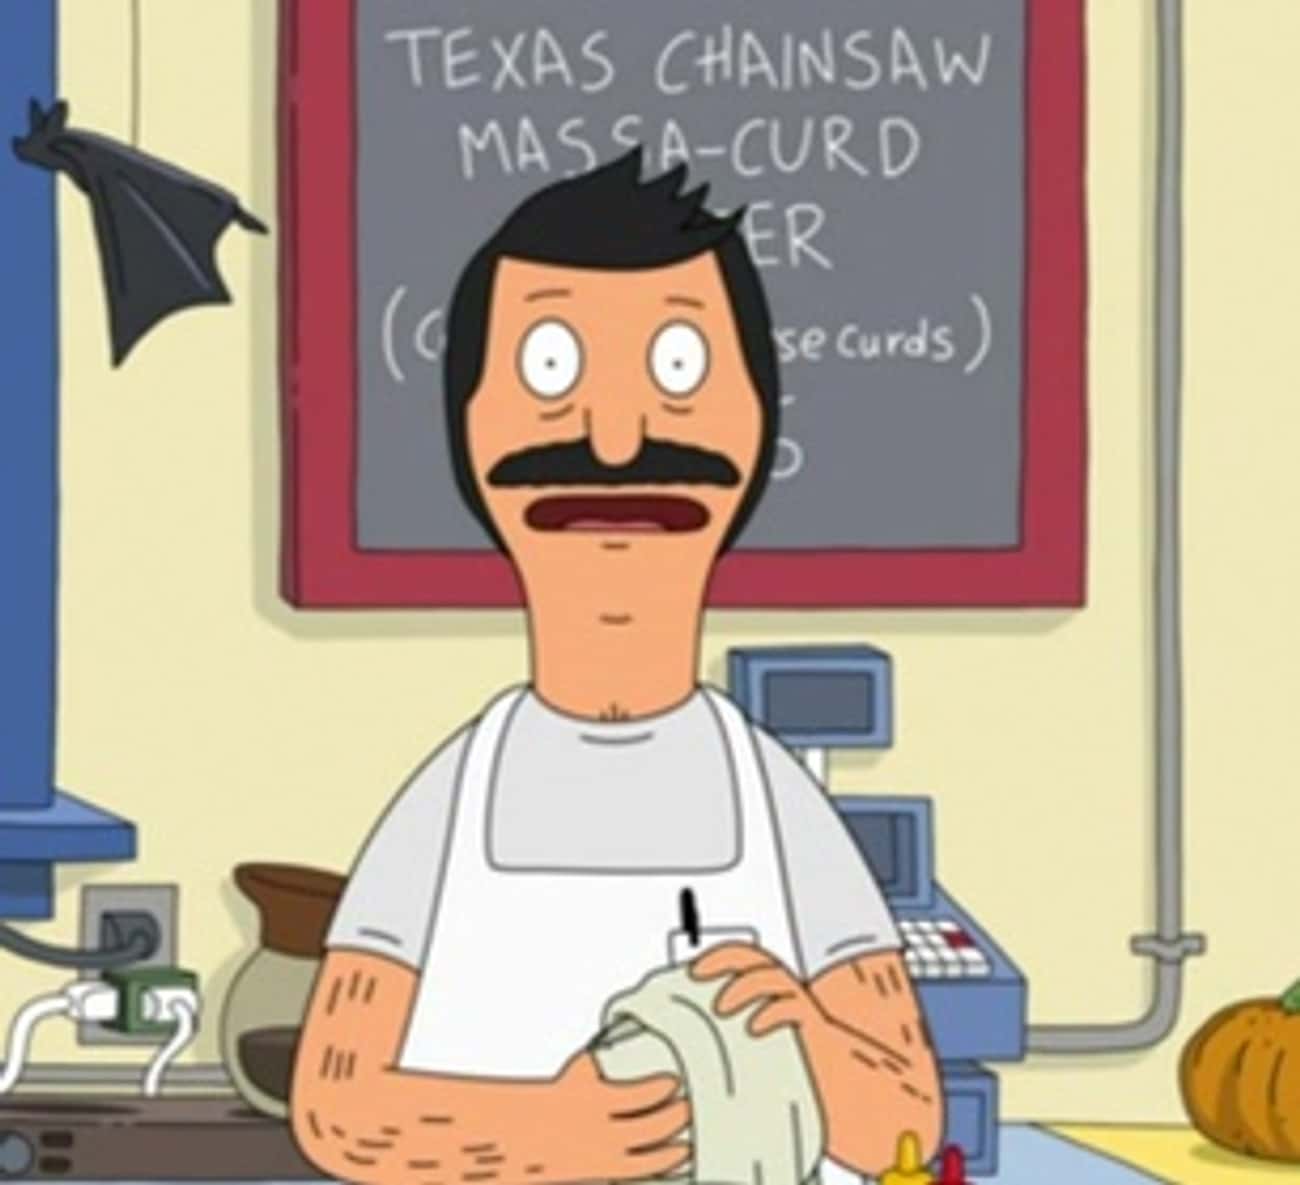 Texas Chainsaw Massa-Curd Burger